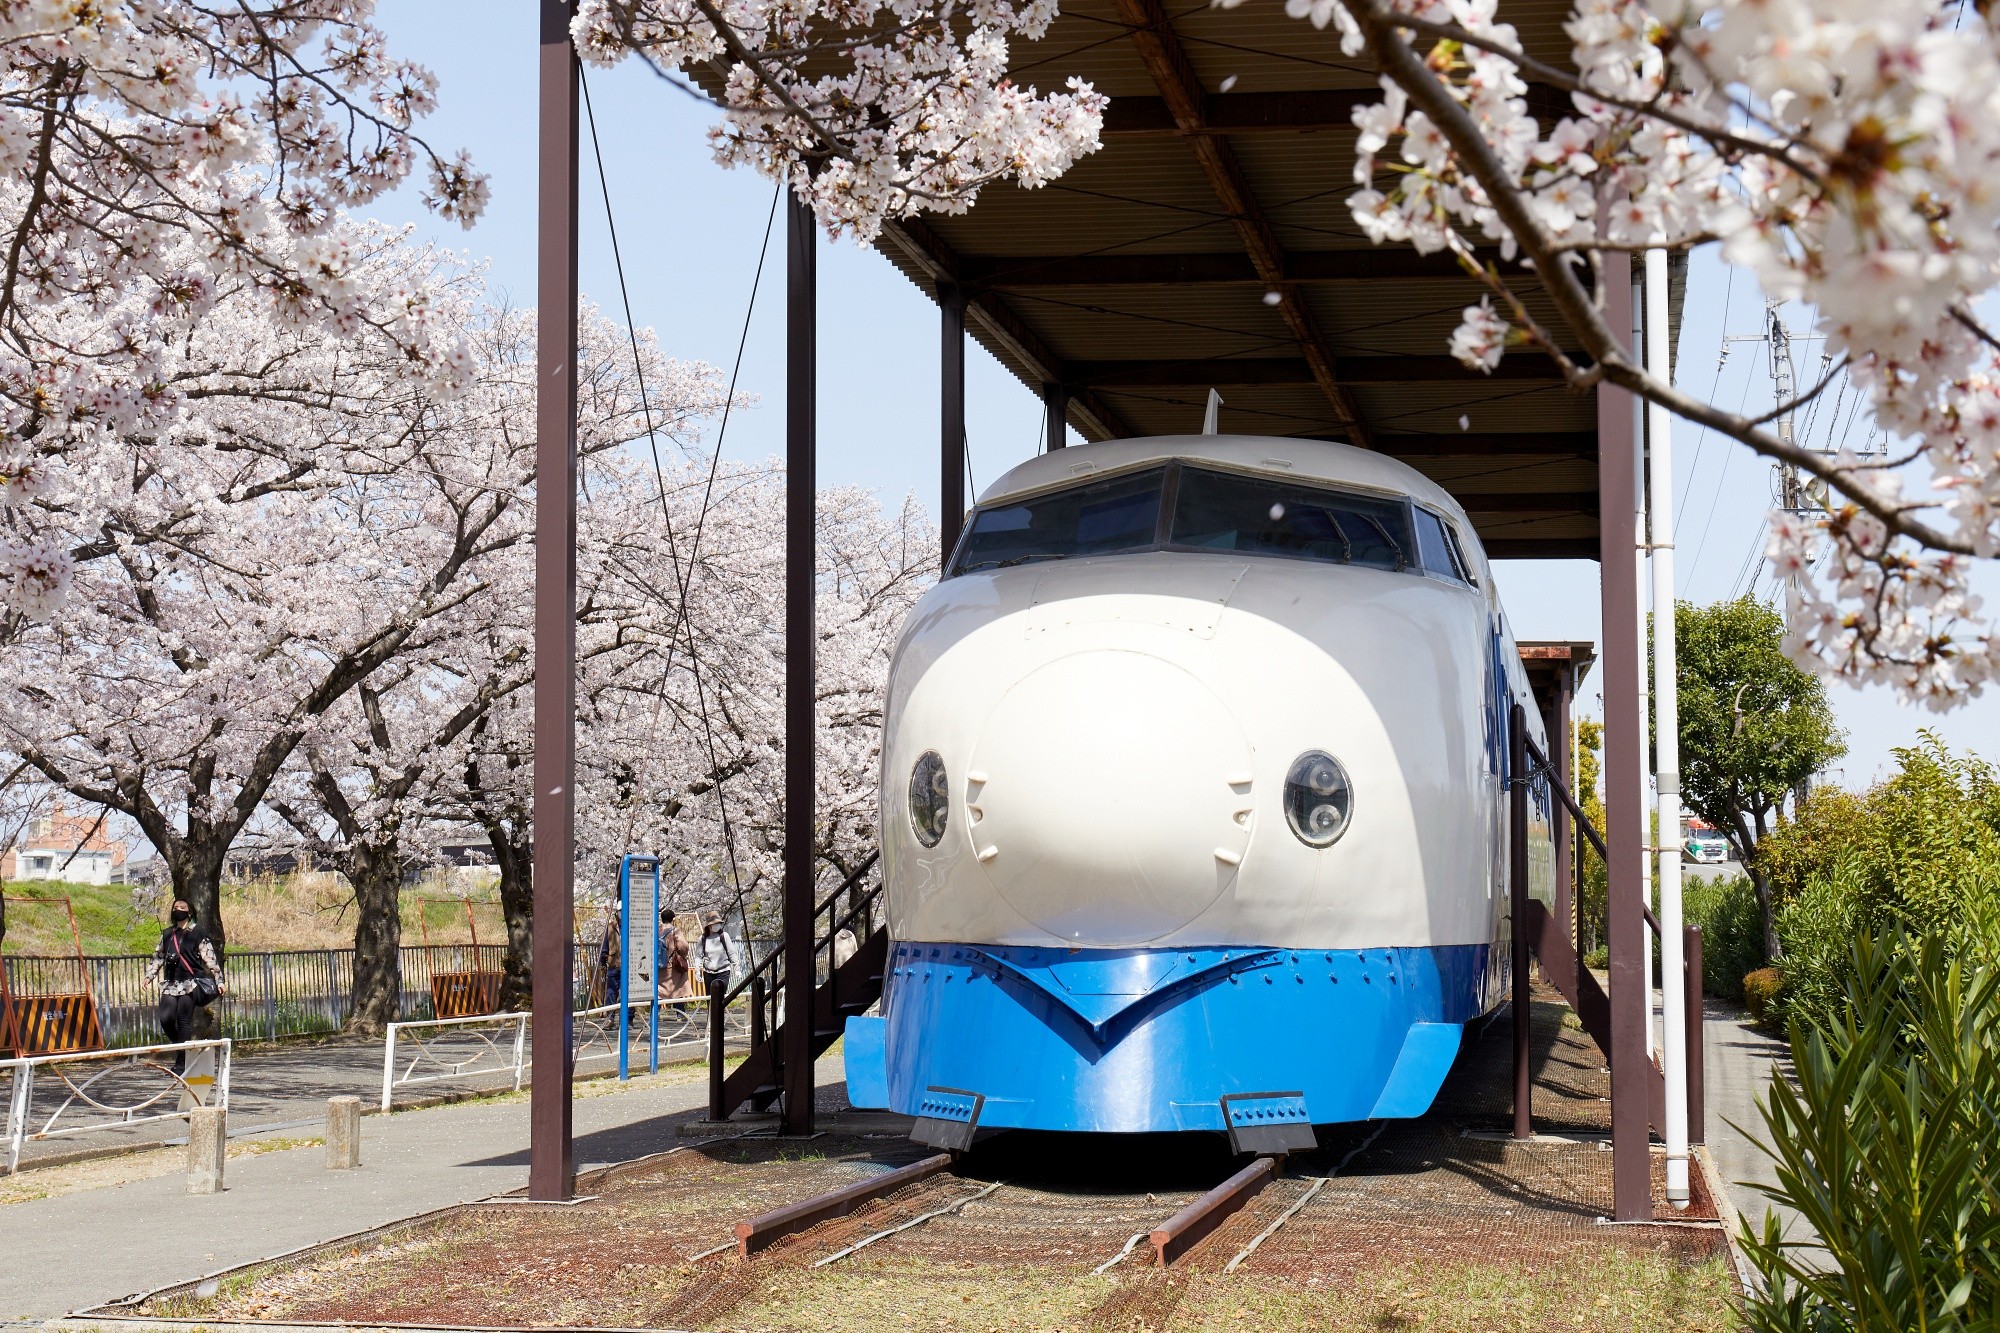 【ซากุระ x รถไฟ】สวนชินคันเซ็น ที่หายากในญี่ปุ่น! ชมดอกซากุระไปพร้อมรถไฟชินคันเซ็น (กรุงโอซาก้า)